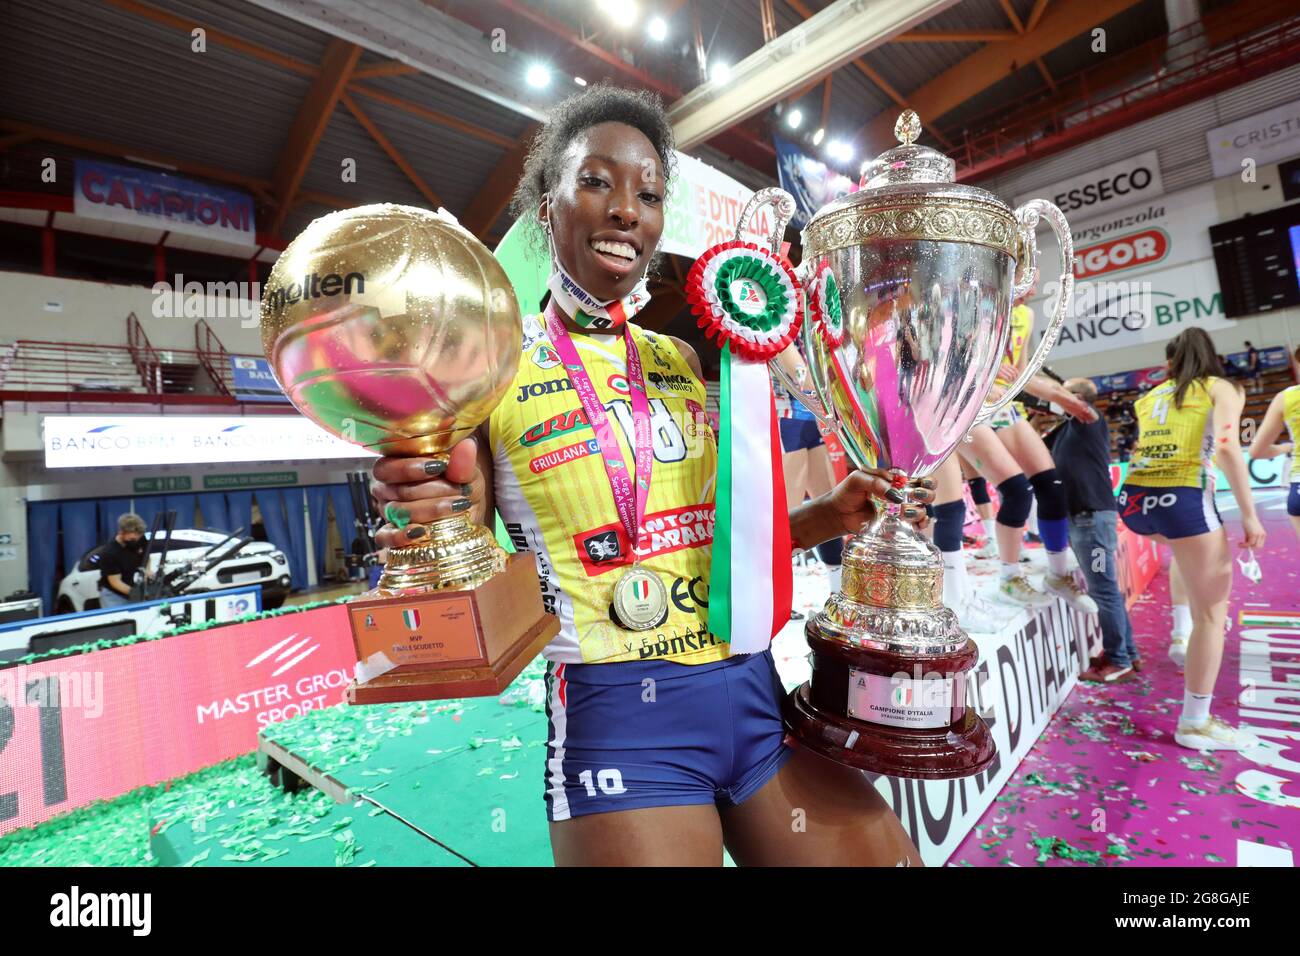 Paola Egonu Team Italien und Imoco Volley Conegliano Volleyballspieler gegenüber spiker Stockfoto